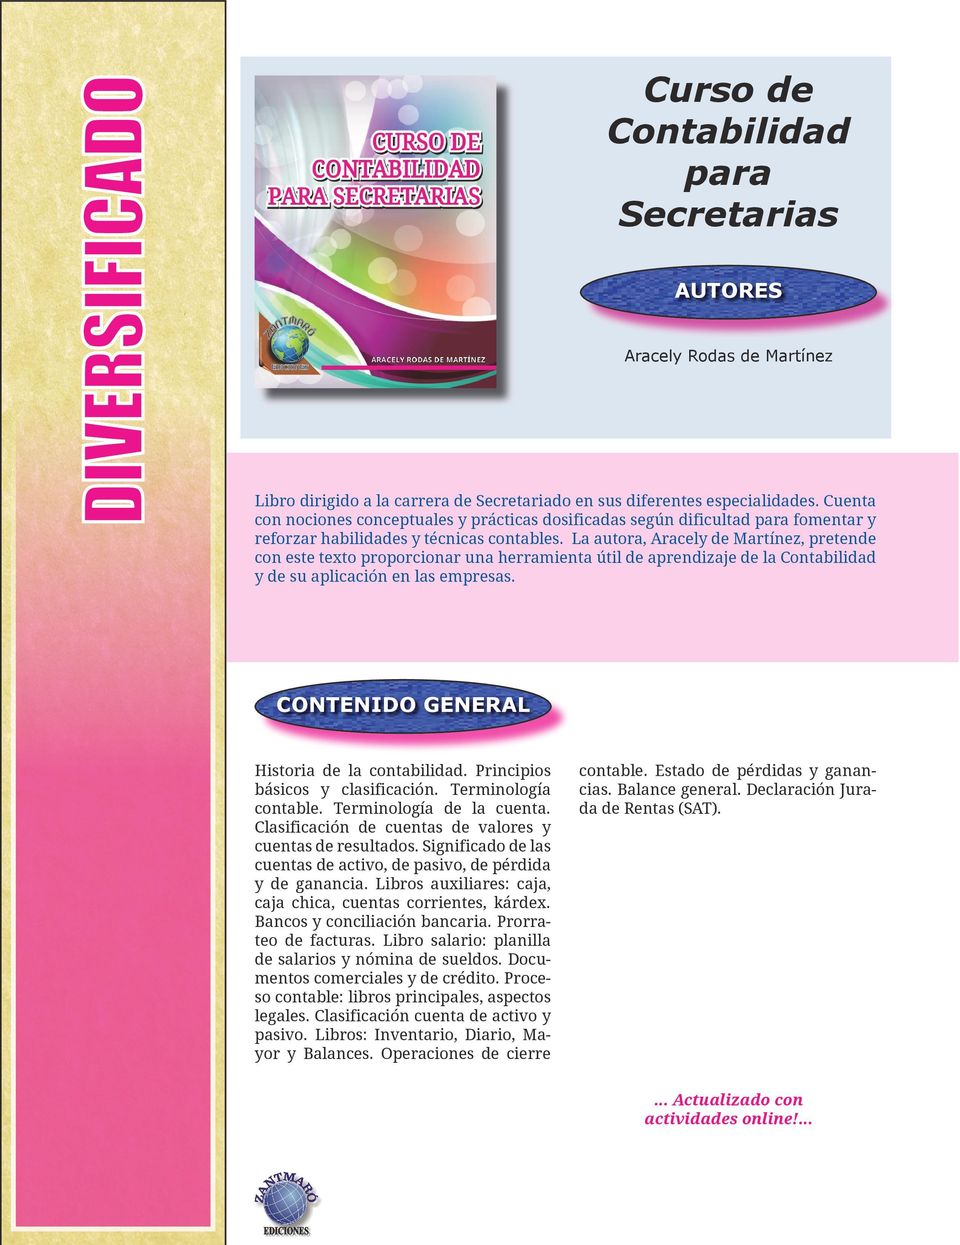 La autora, Aracely de Martínez, pretende con este texto proporcionar una herramienta útil de aprendizaje de la Contabilidad y de su aplicación en las empresas. Historia de la contabilidad.